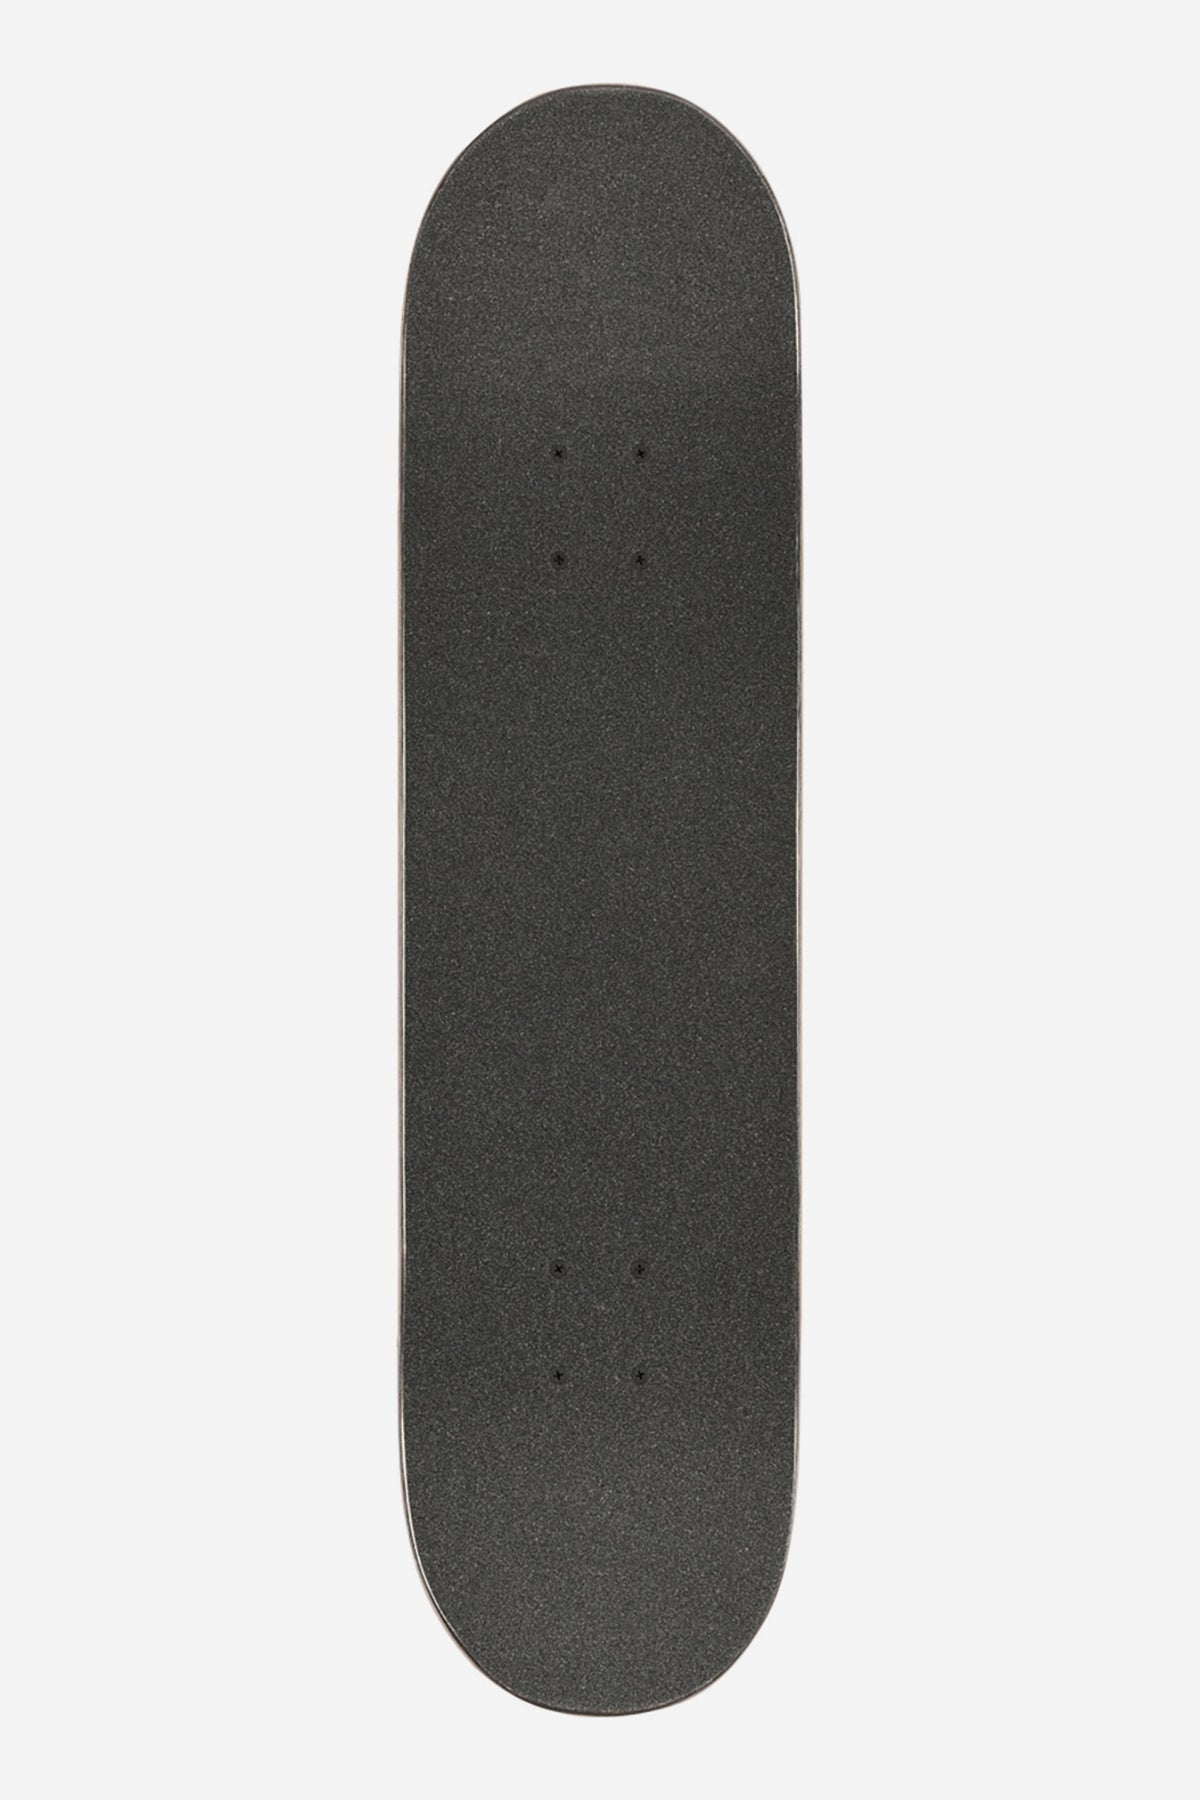 Goodstock - Off White - 8.0" Complete Skateboard